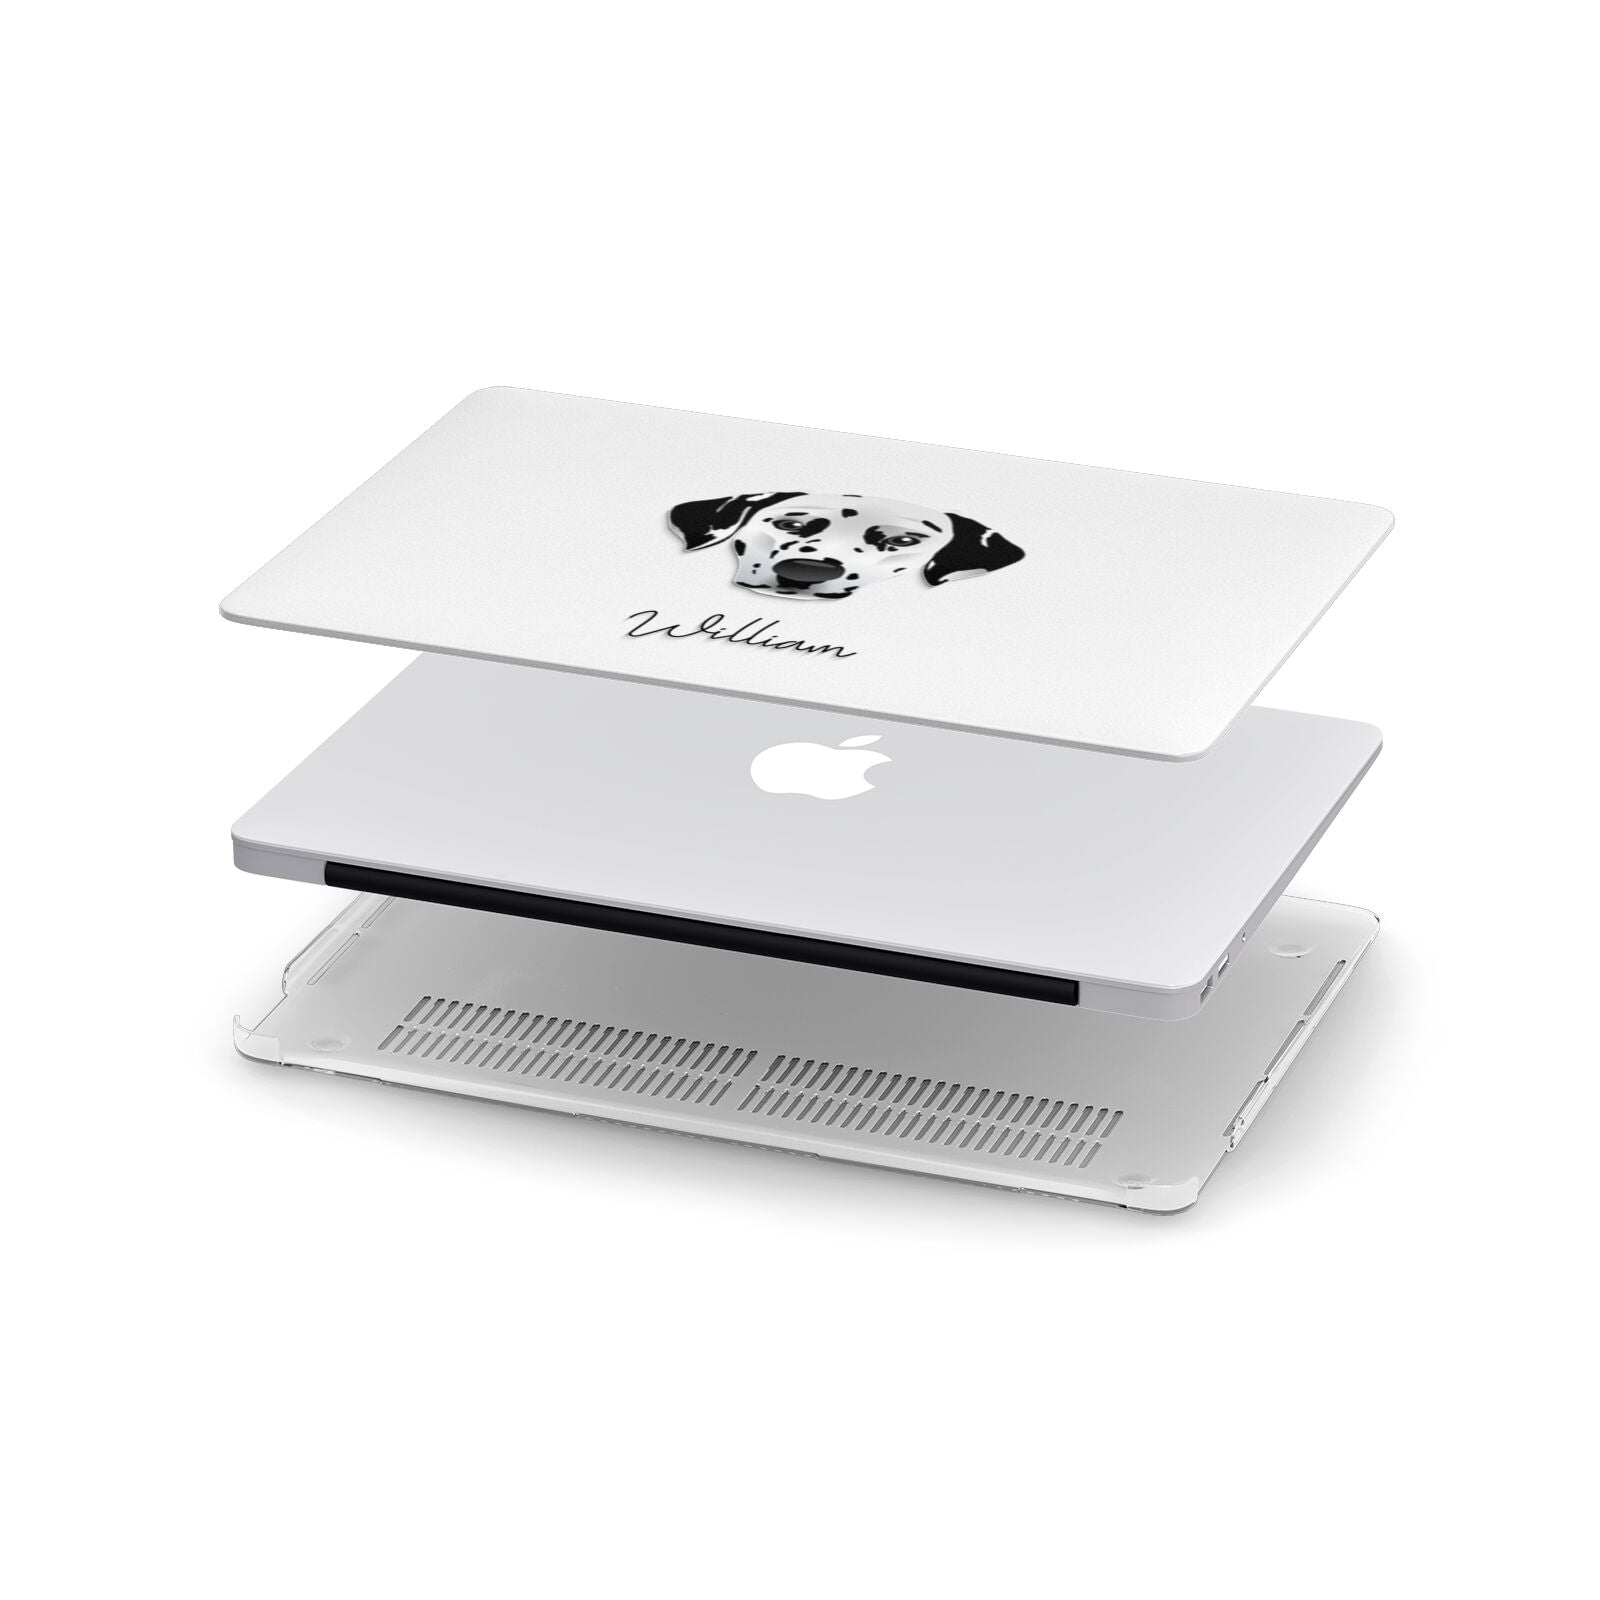 Dalmatian Personalised Apple MacBook Case in Detail